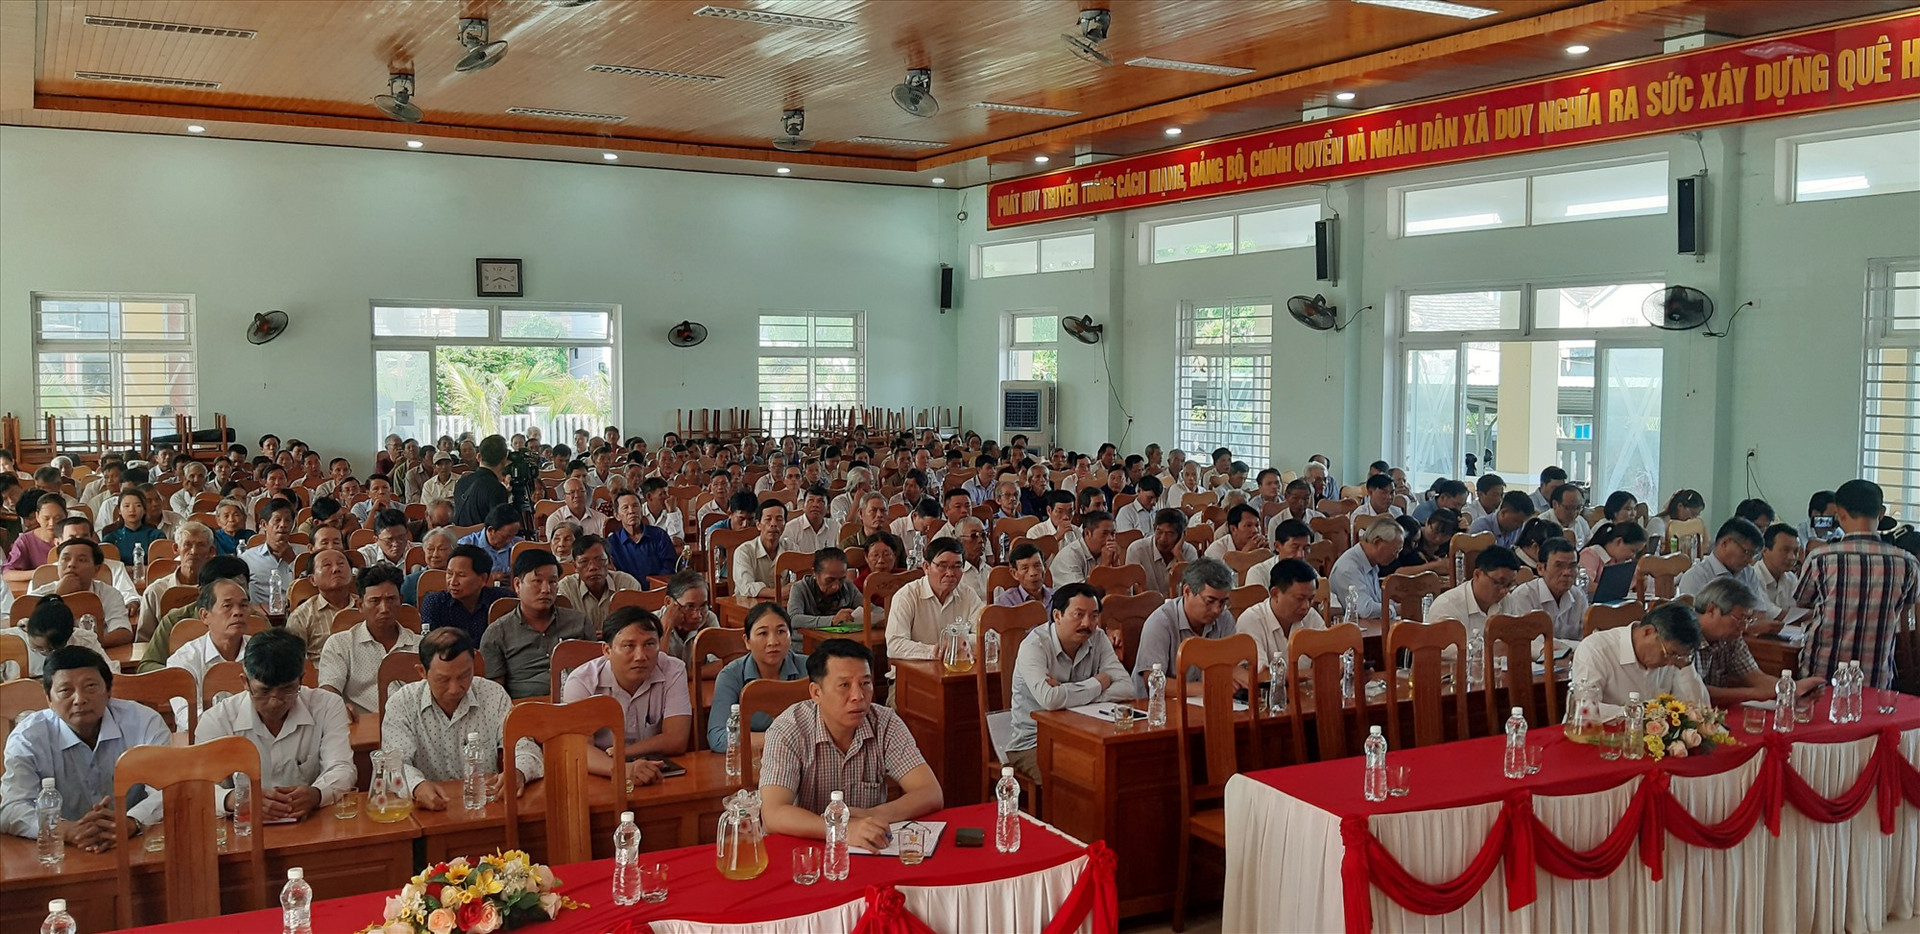 Đông đảo cử tri huyện Duy Xuyên tham dự buổi tiếp xúc với Đoàn ĐBQH tỉnh.  Ảnh: VĂN SỰ